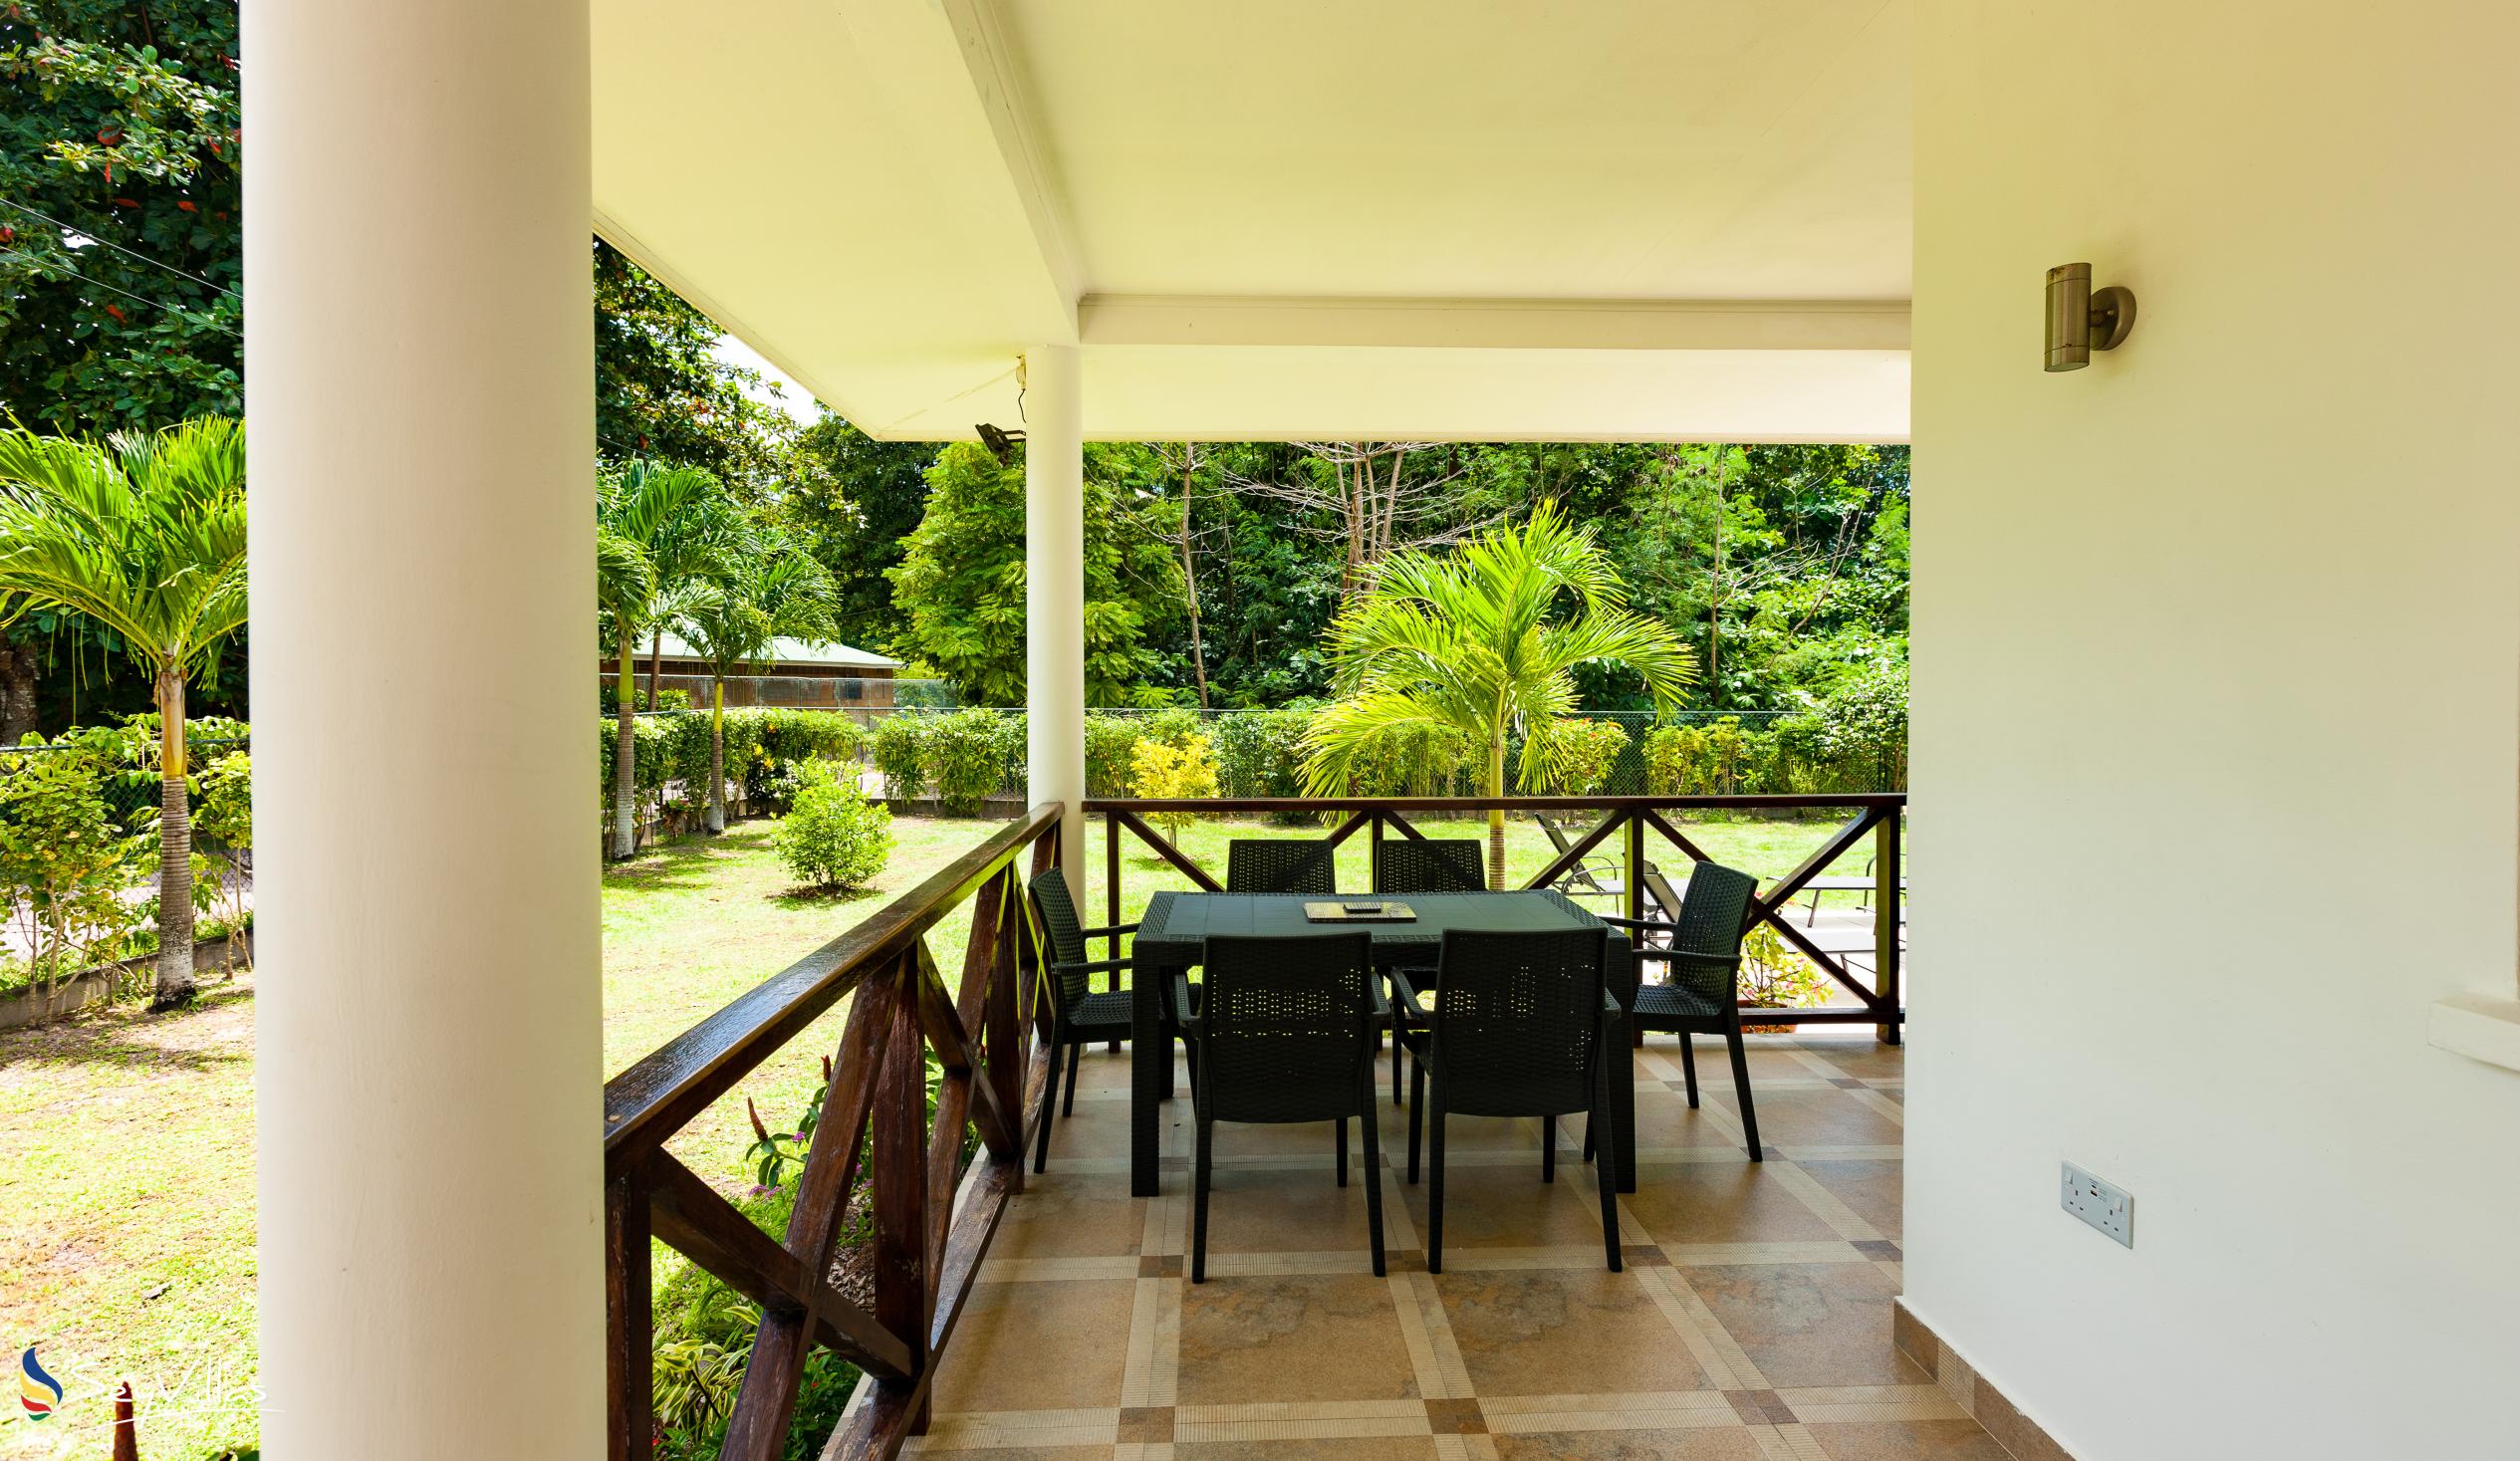 Foto 11: Villa Laure - Aussenbereich - Praslin (Seychellen)